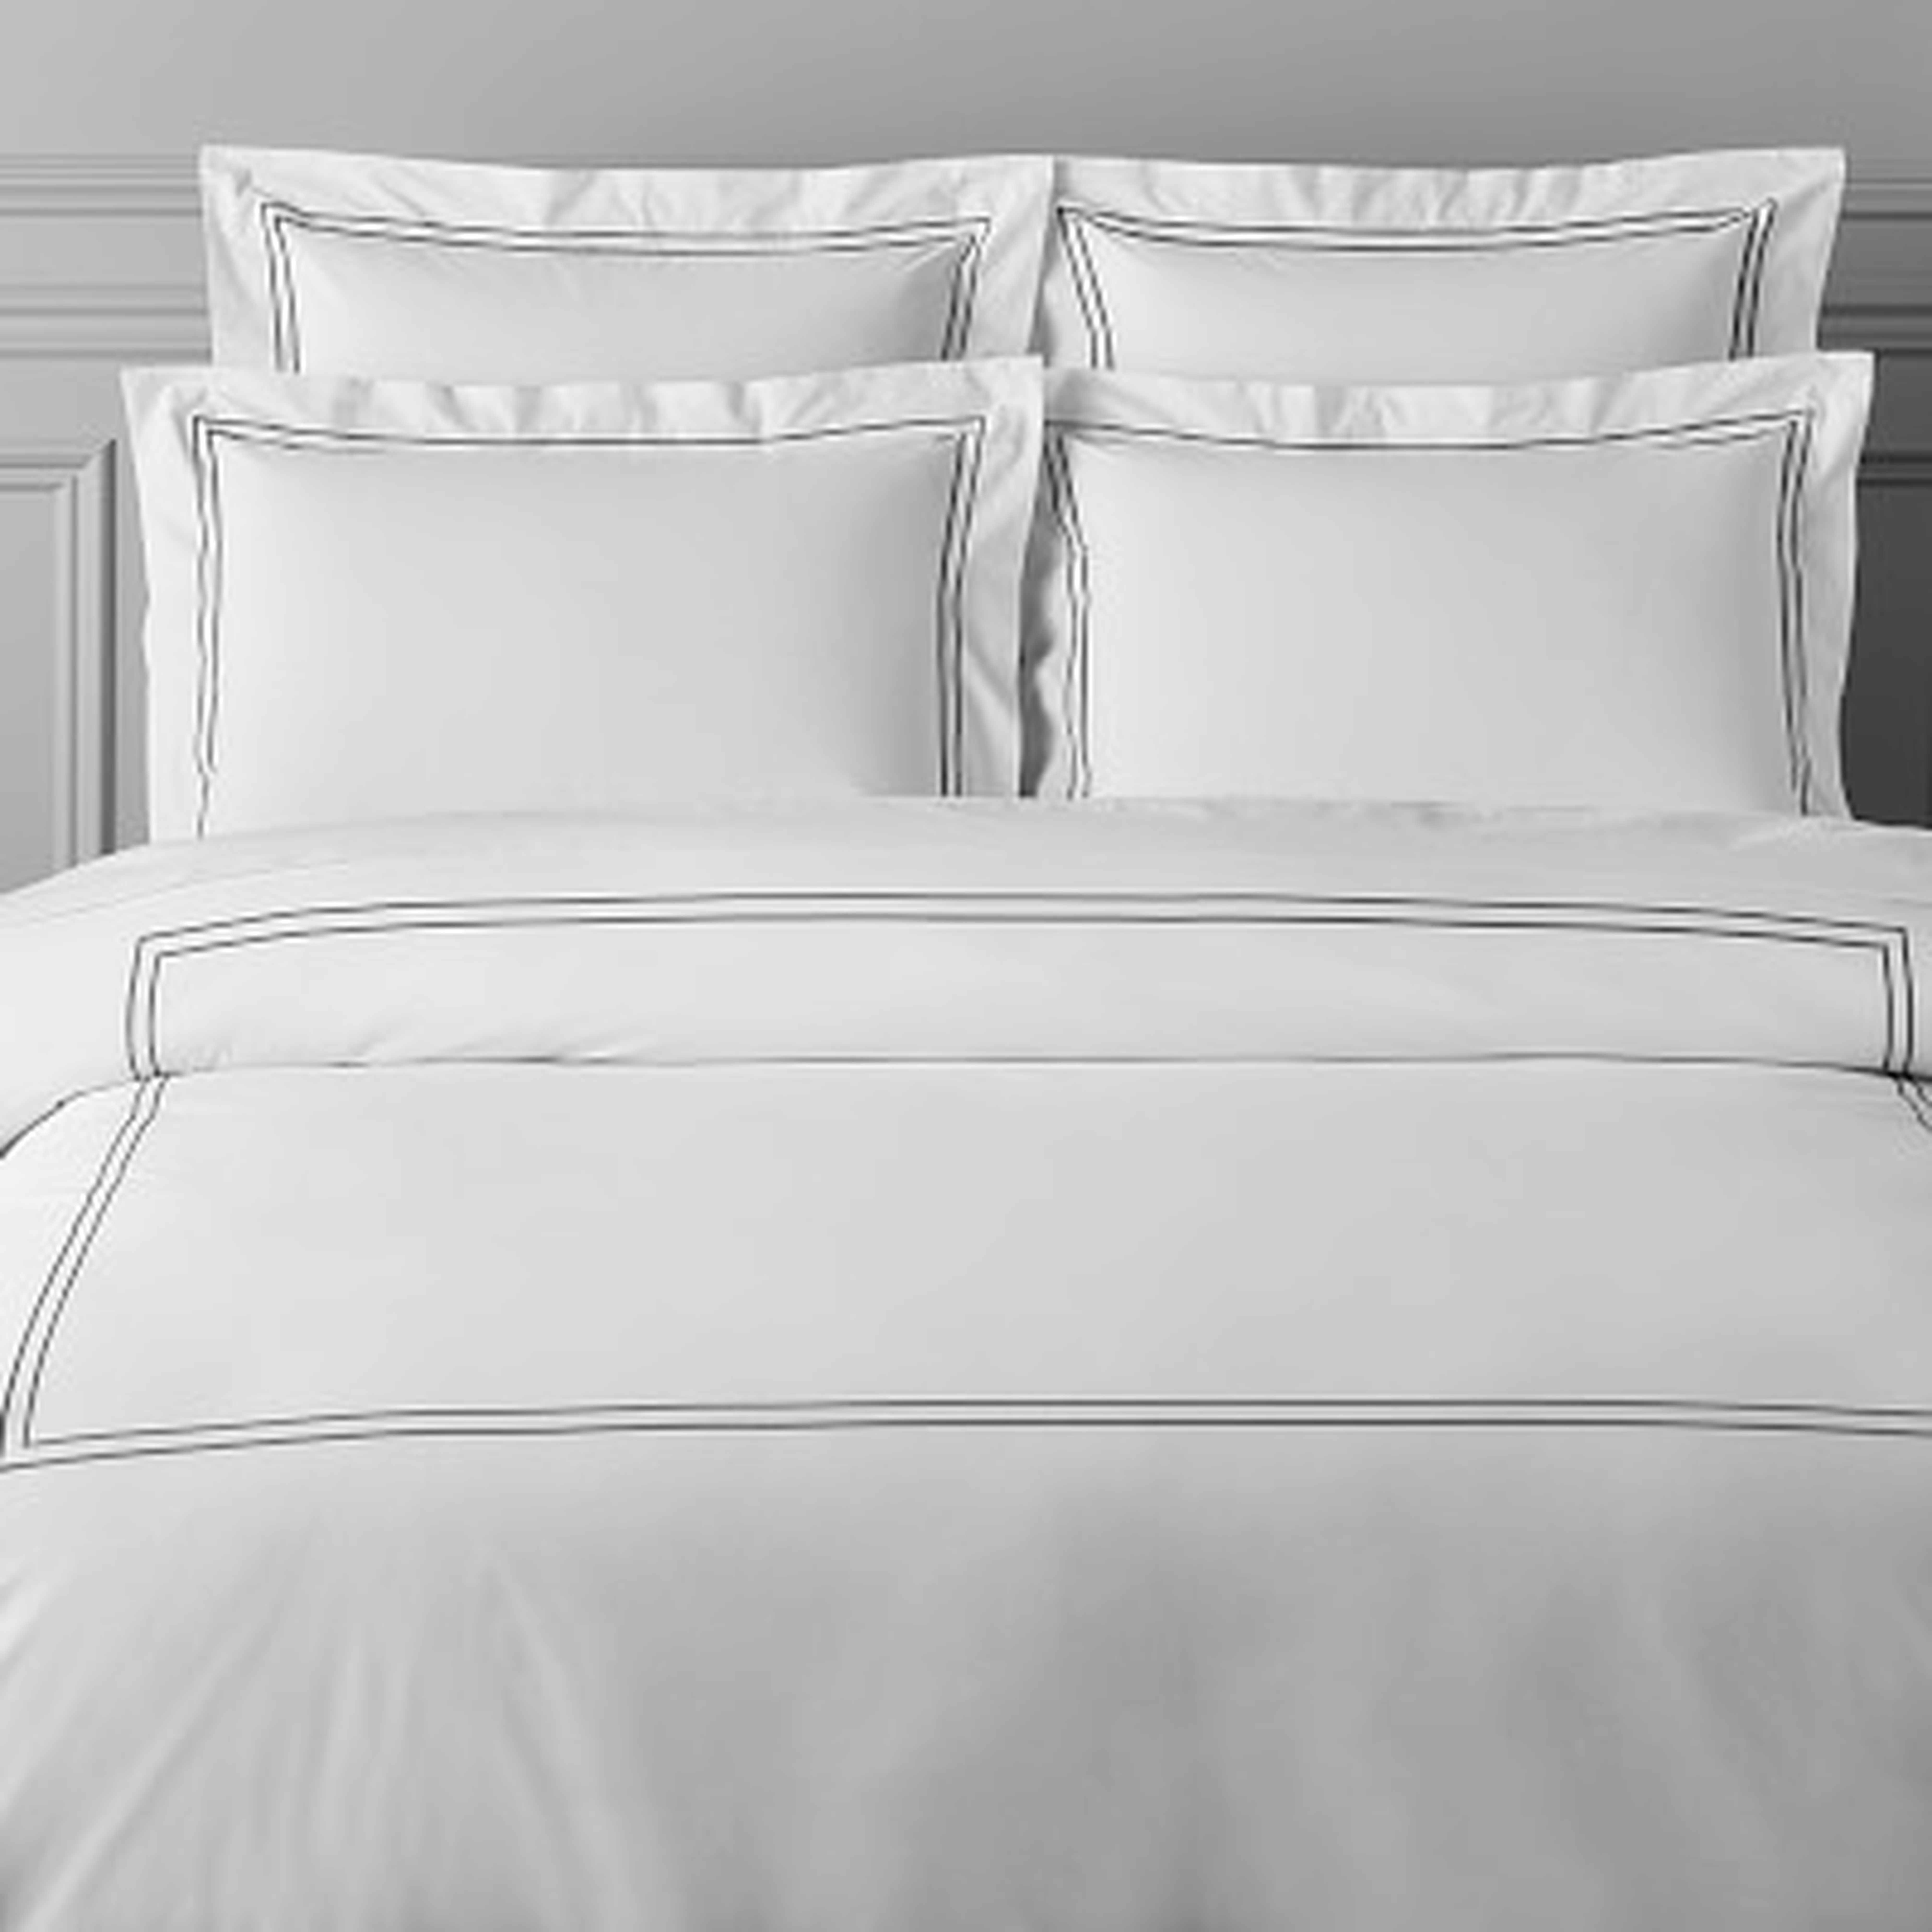 White Hotel Bedding, Duvet Cover, King, Black - Williams Sonoma